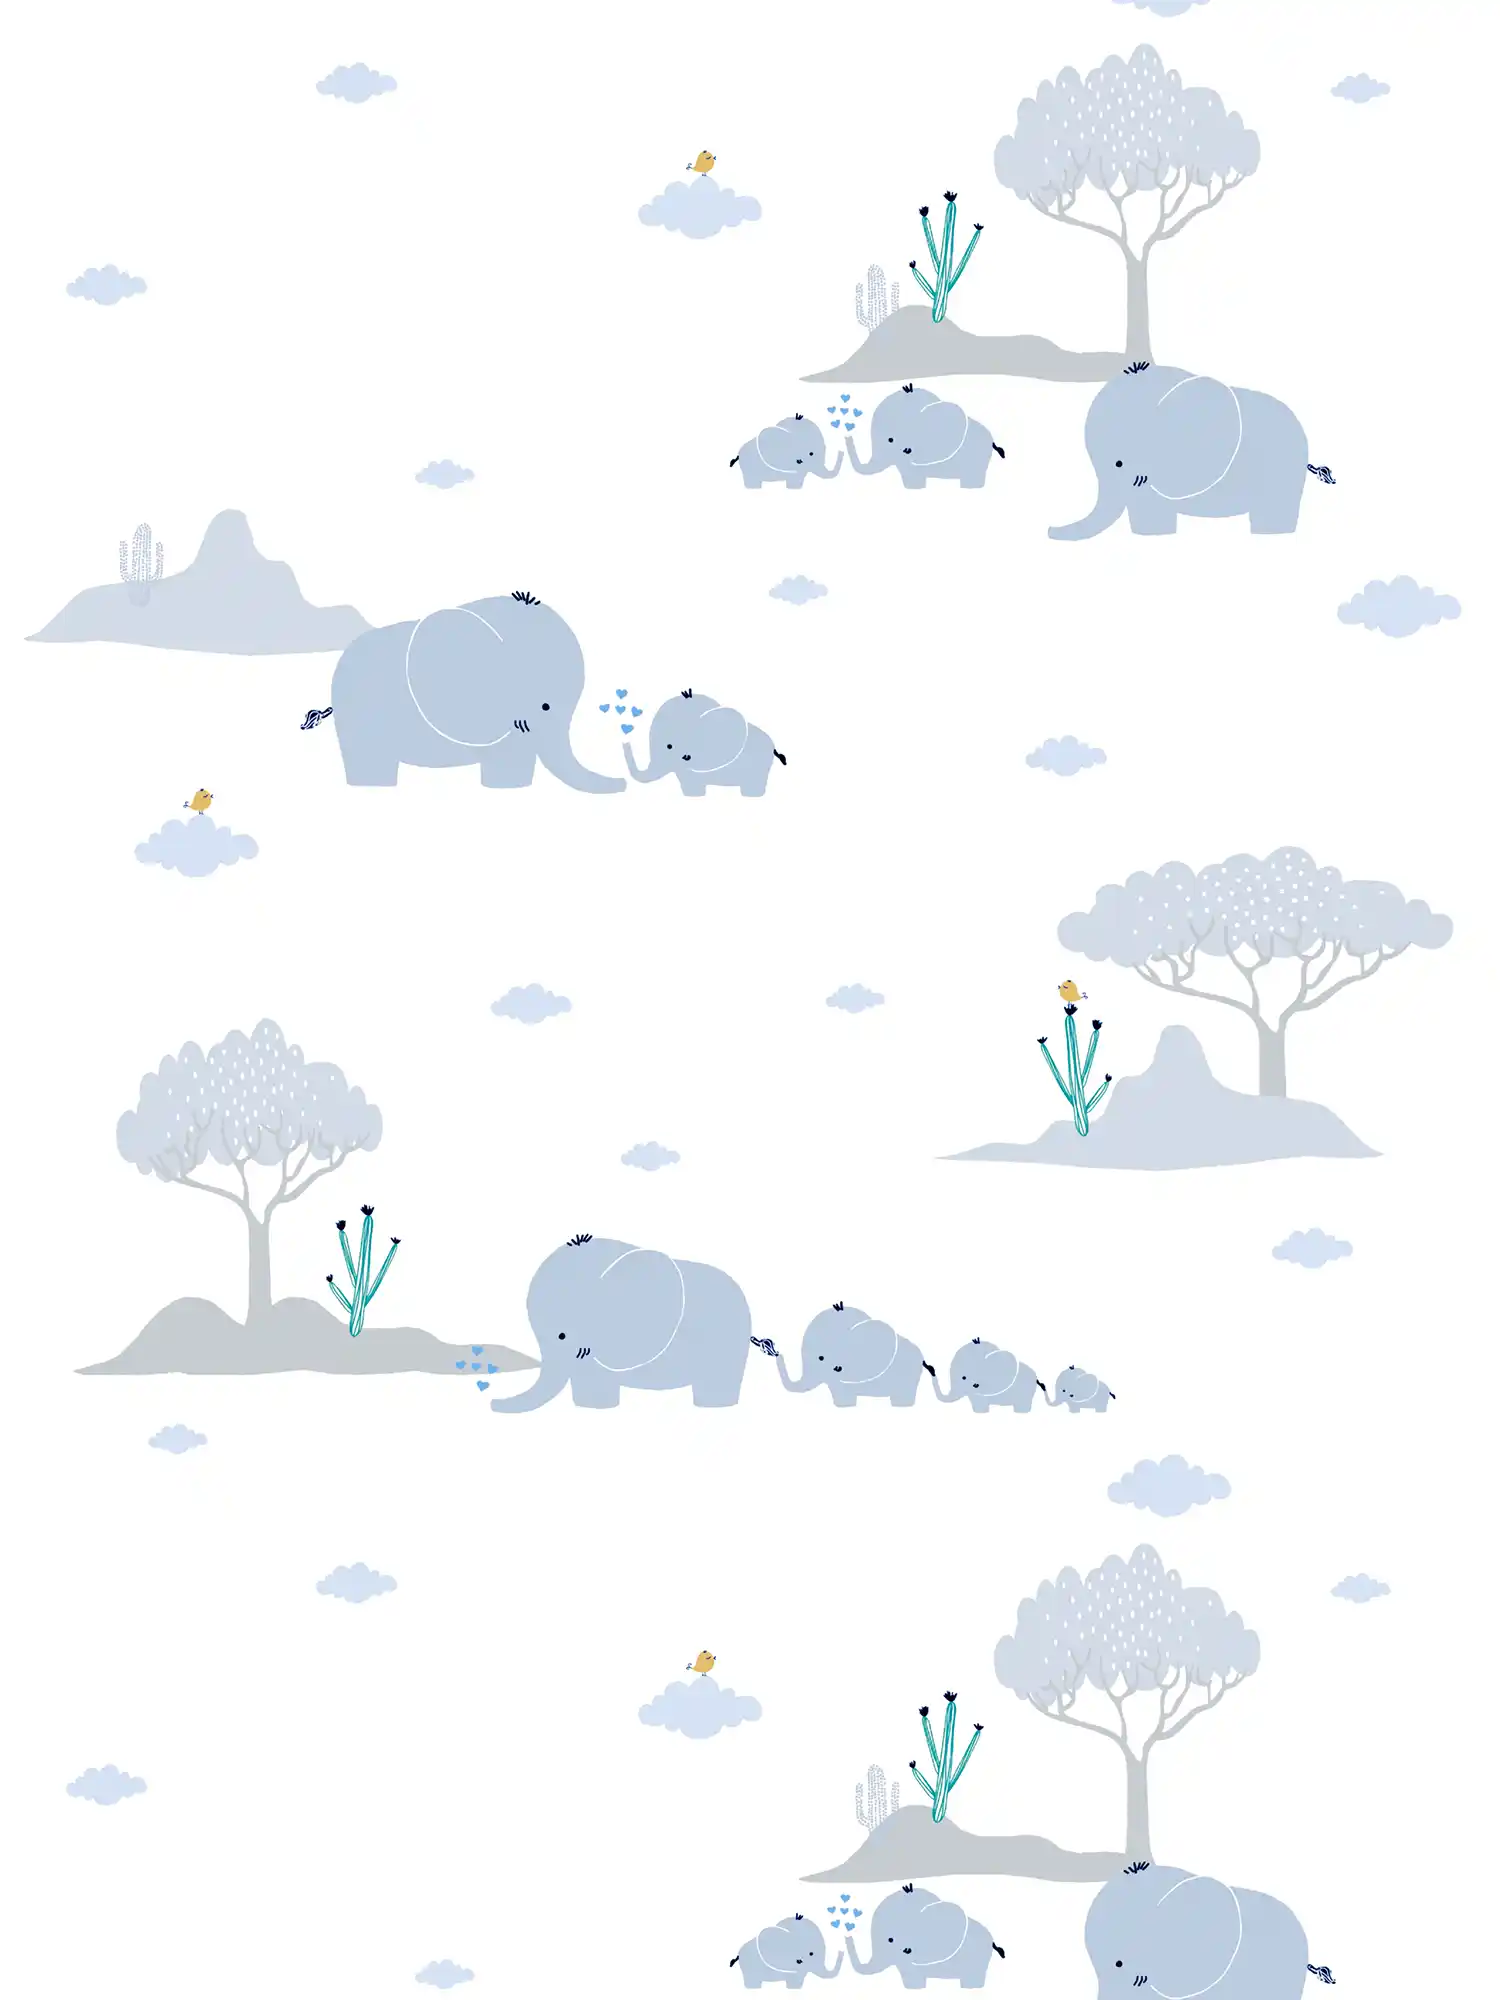         Wallpaper Nursery boys elephants & landscape - blue, grey, white
    